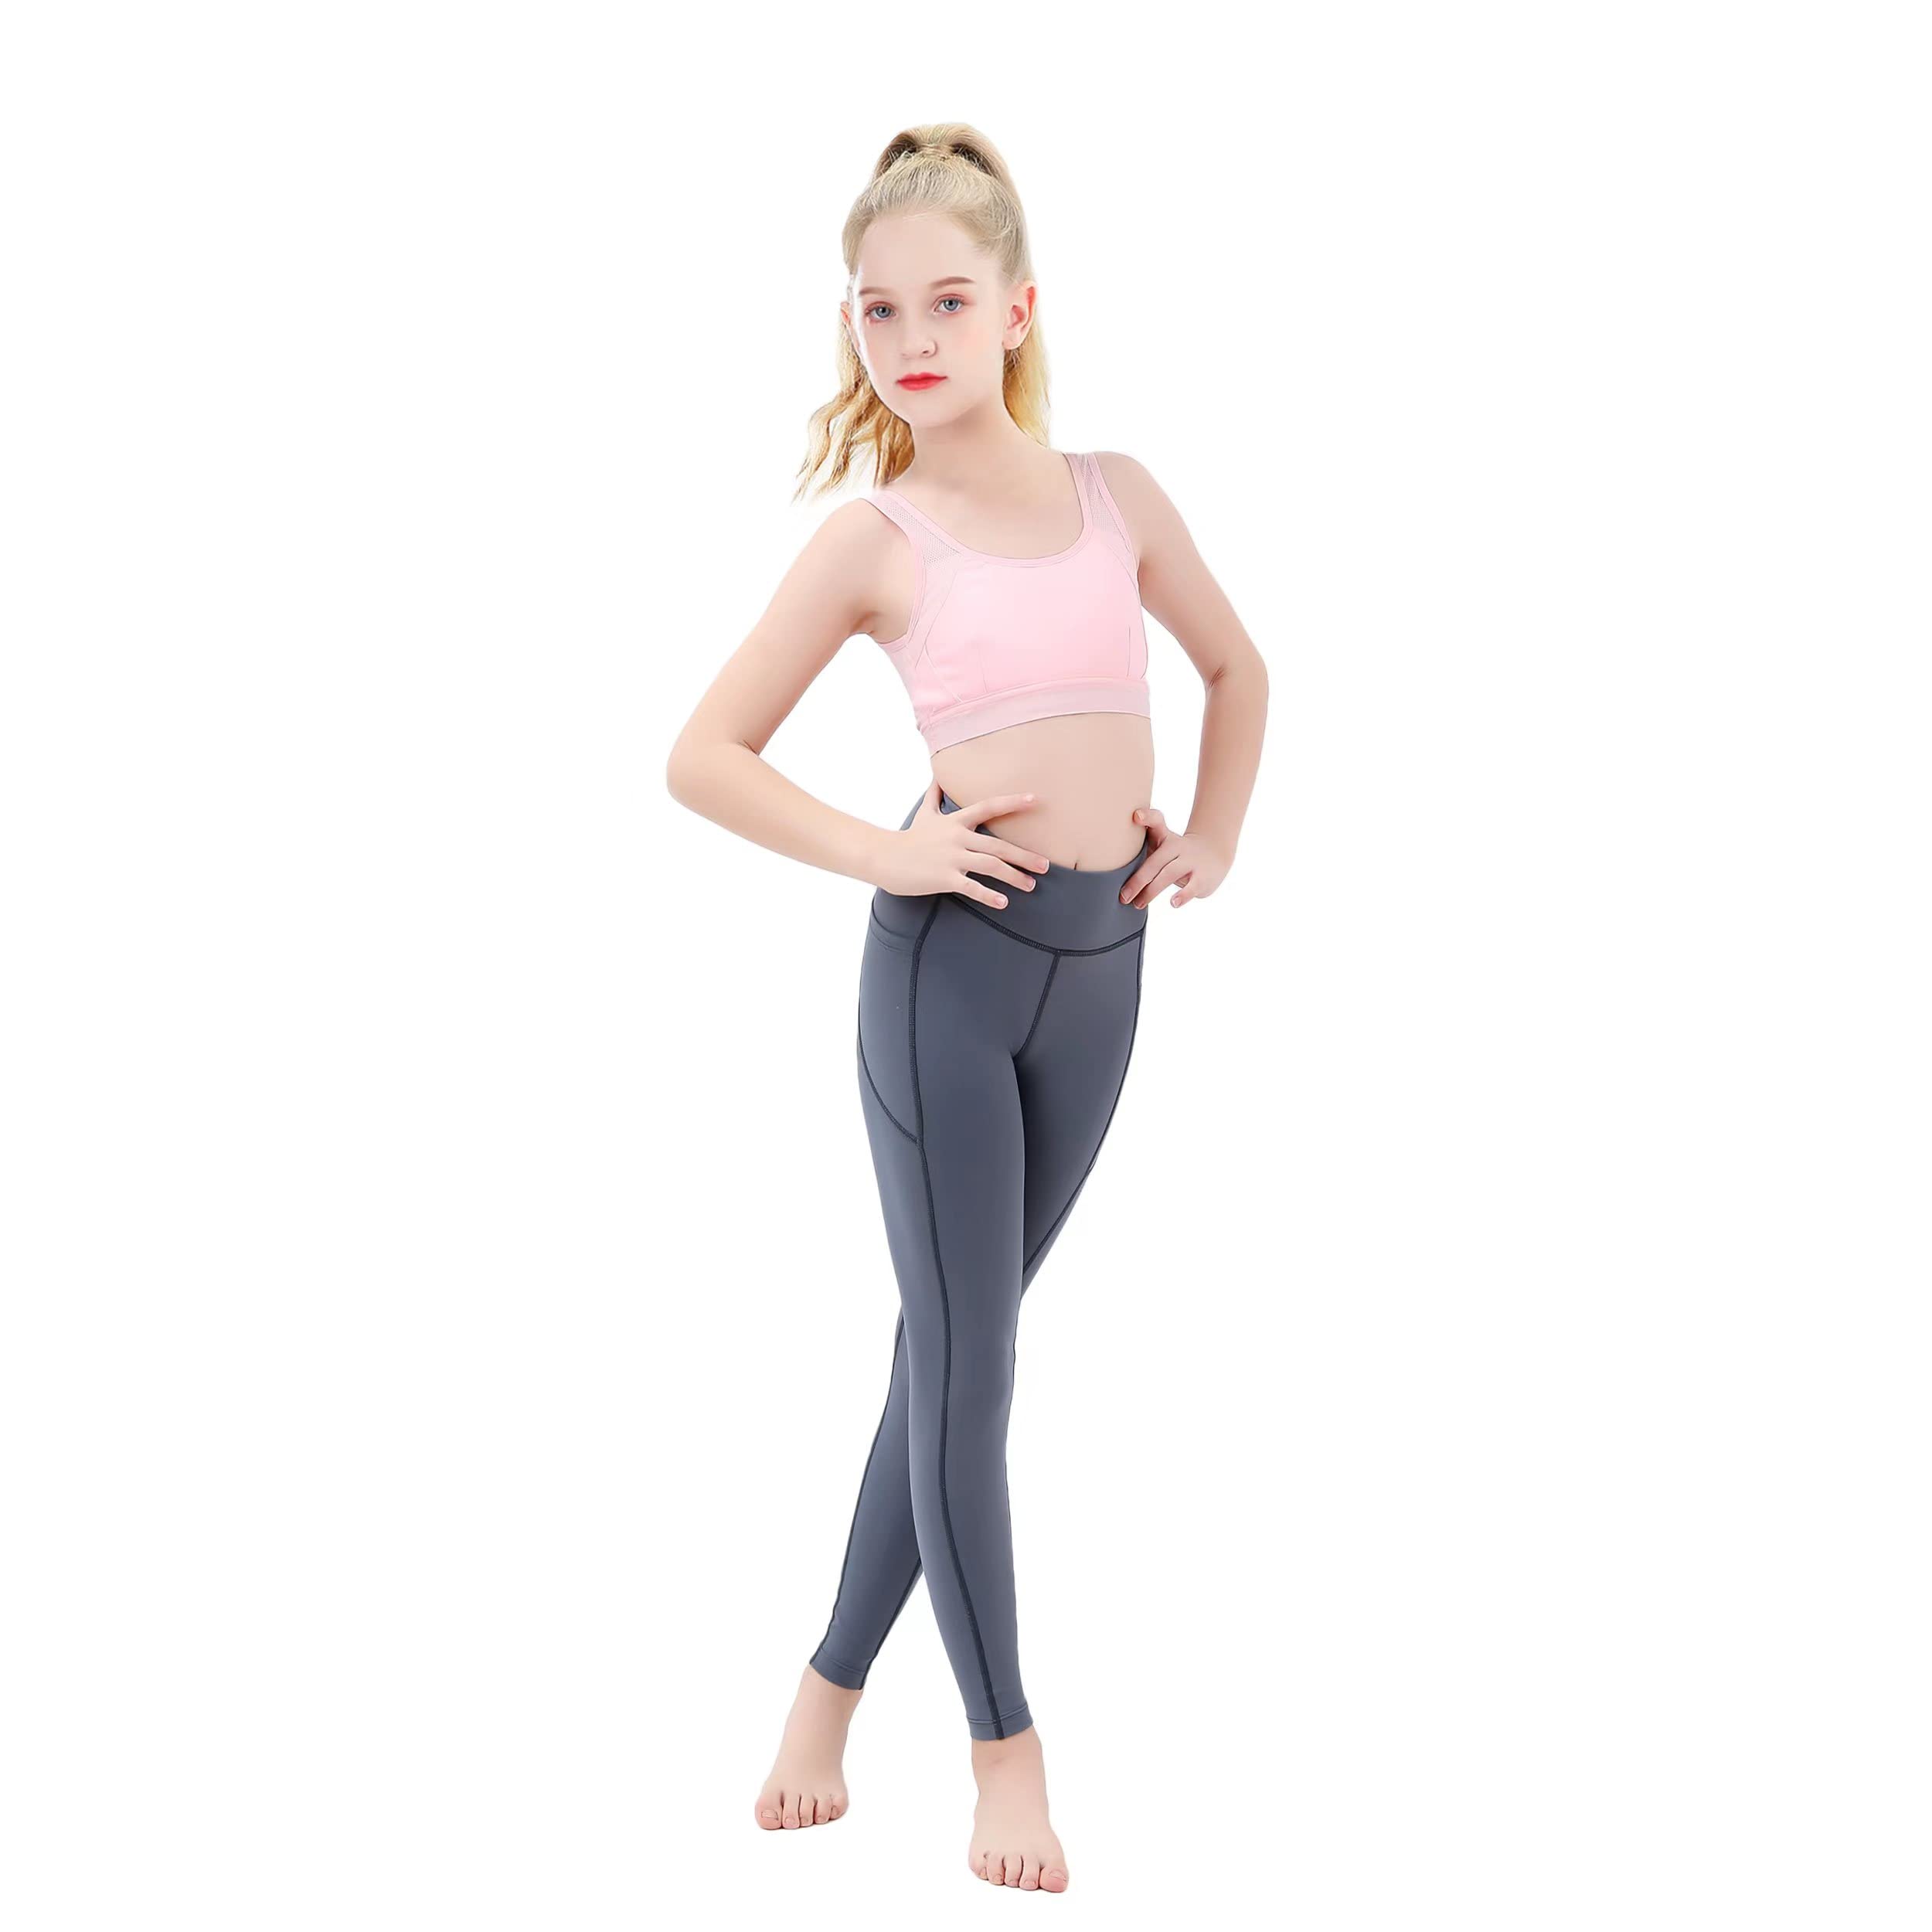 Girls in Yoga Pants - Leggings - Leggings